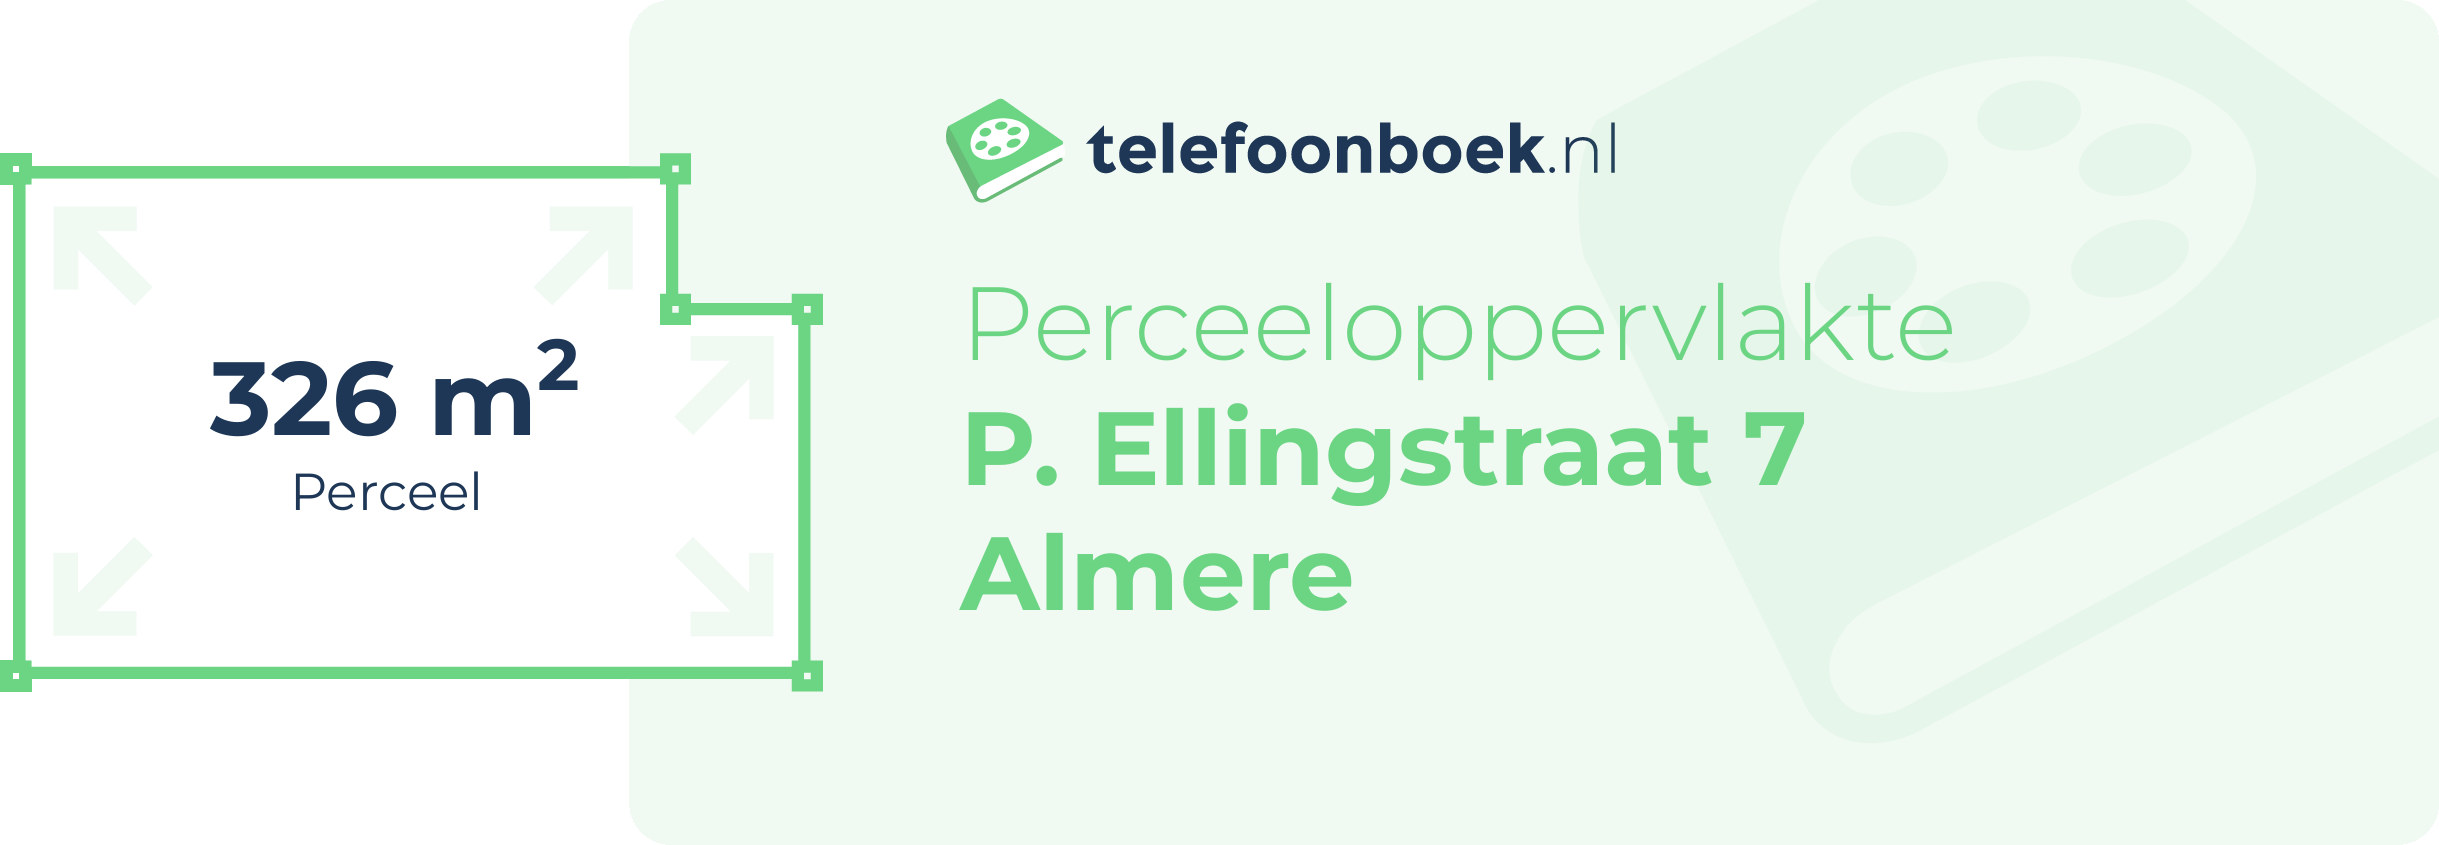 Perceeloppervlakte P. Ellingstraat 7 Almere